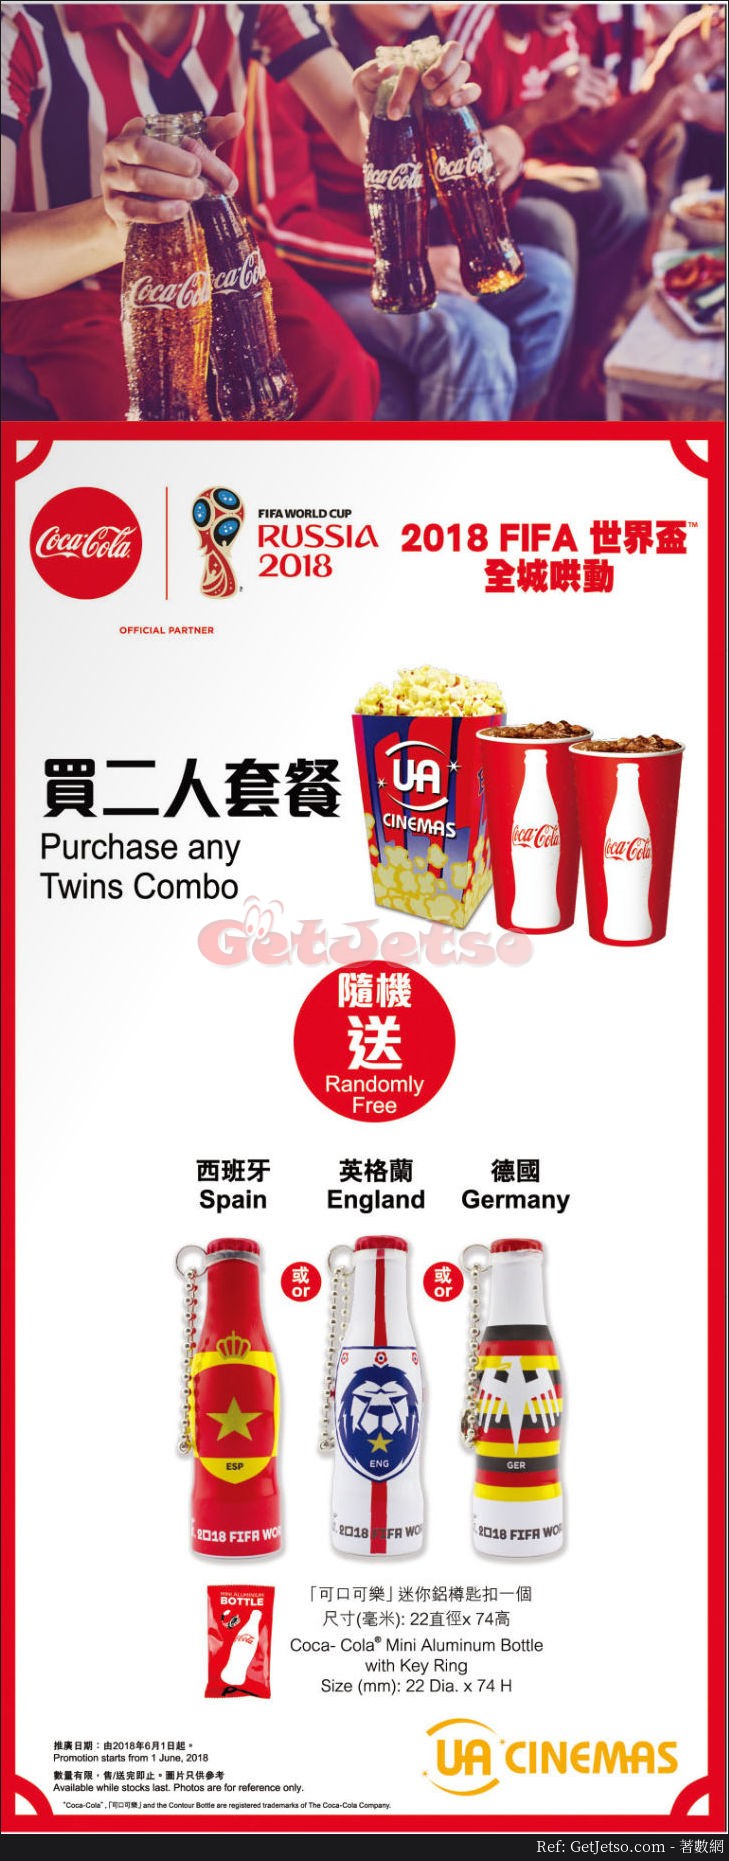 UA Cinemas 買2人套餐送「可口可樂」世界盃迷你鋁樽匙扣(18年6月1日起)圖片1